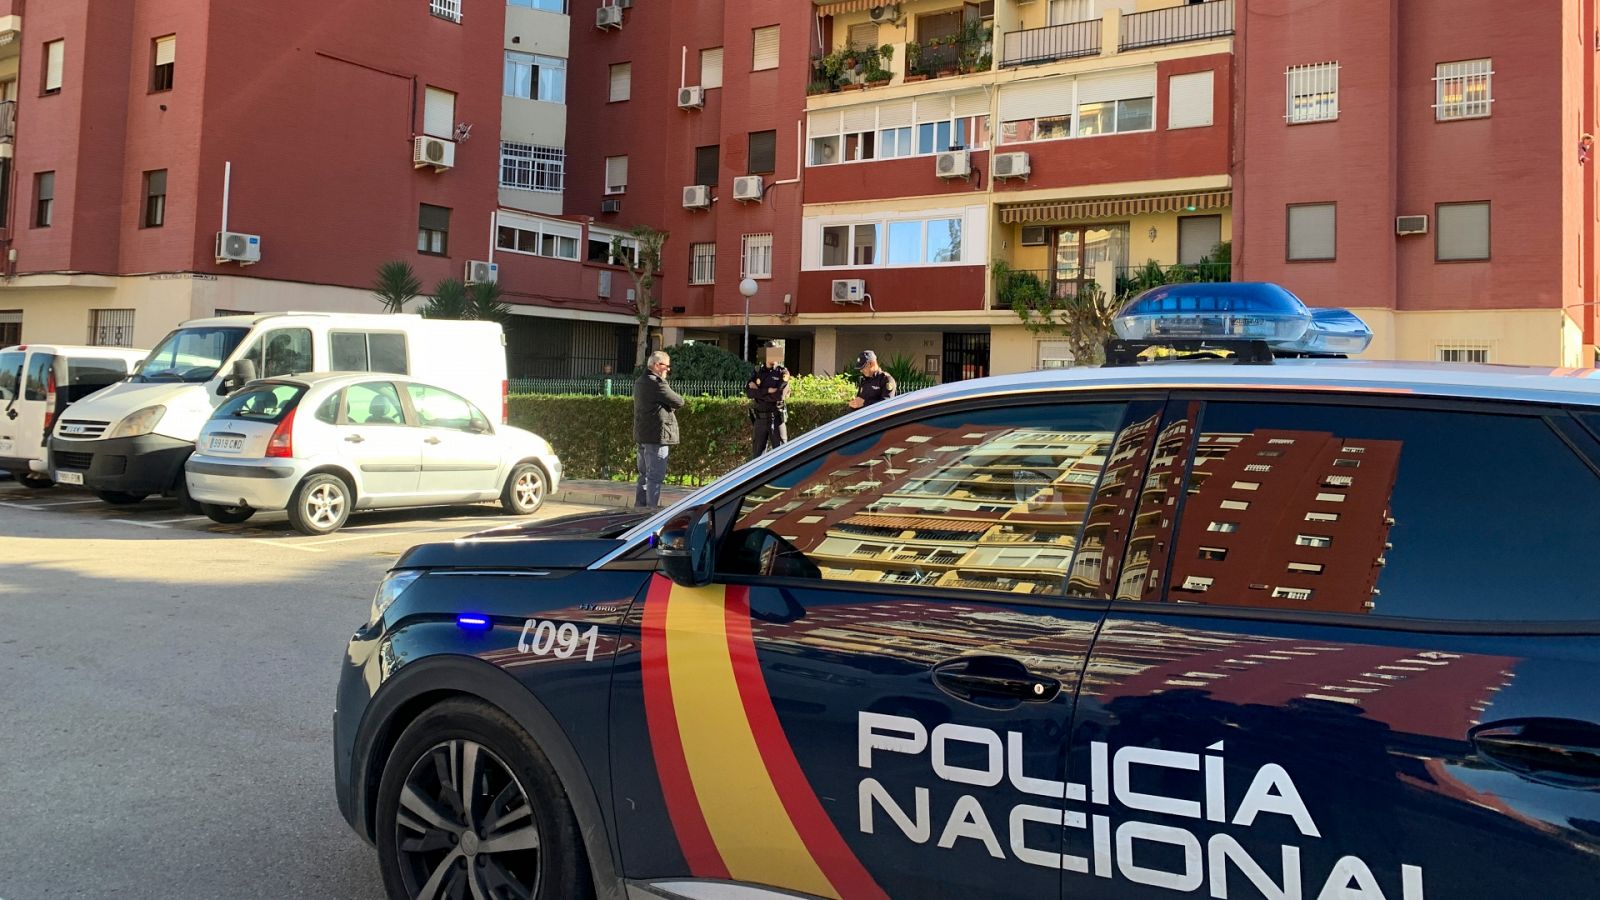 Asesinada una mujer presuntamente por su expareja en Dos Hermanas, Sevilla